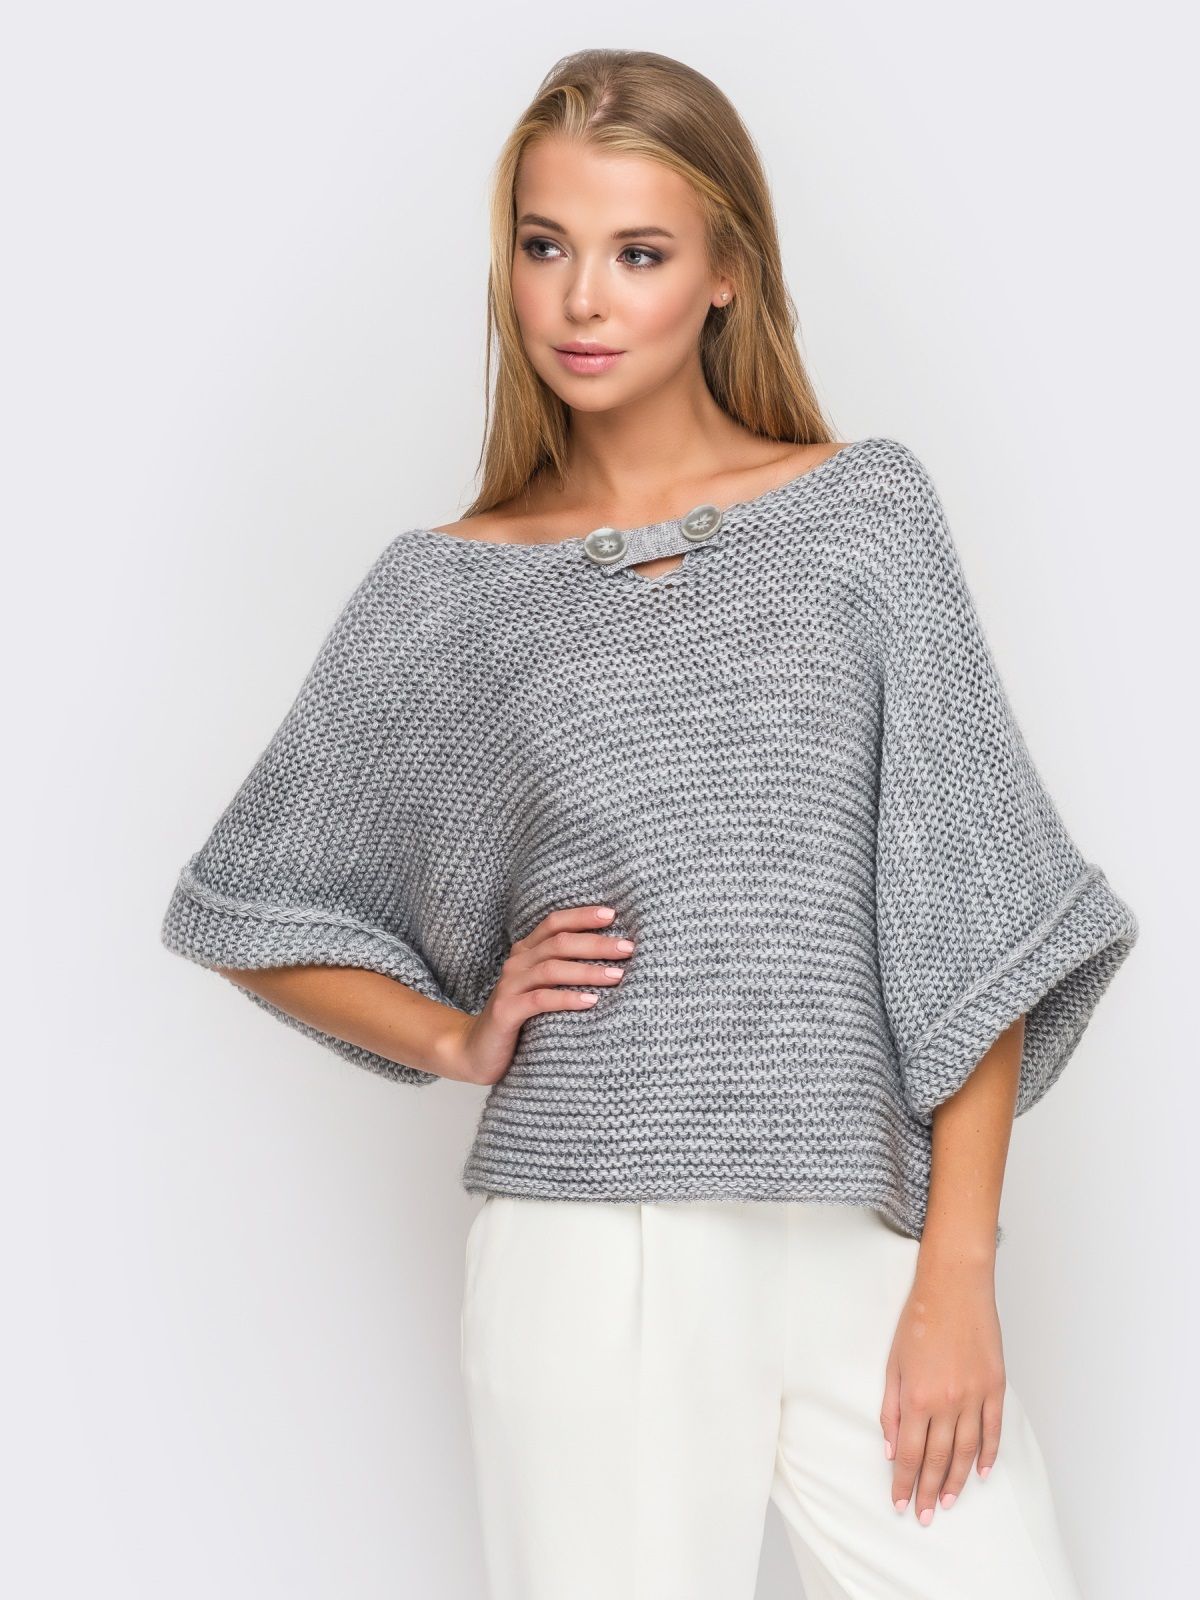 Чем проще, тем моднее: стильный пуловер платочной вязкой вязание,мода,одежда